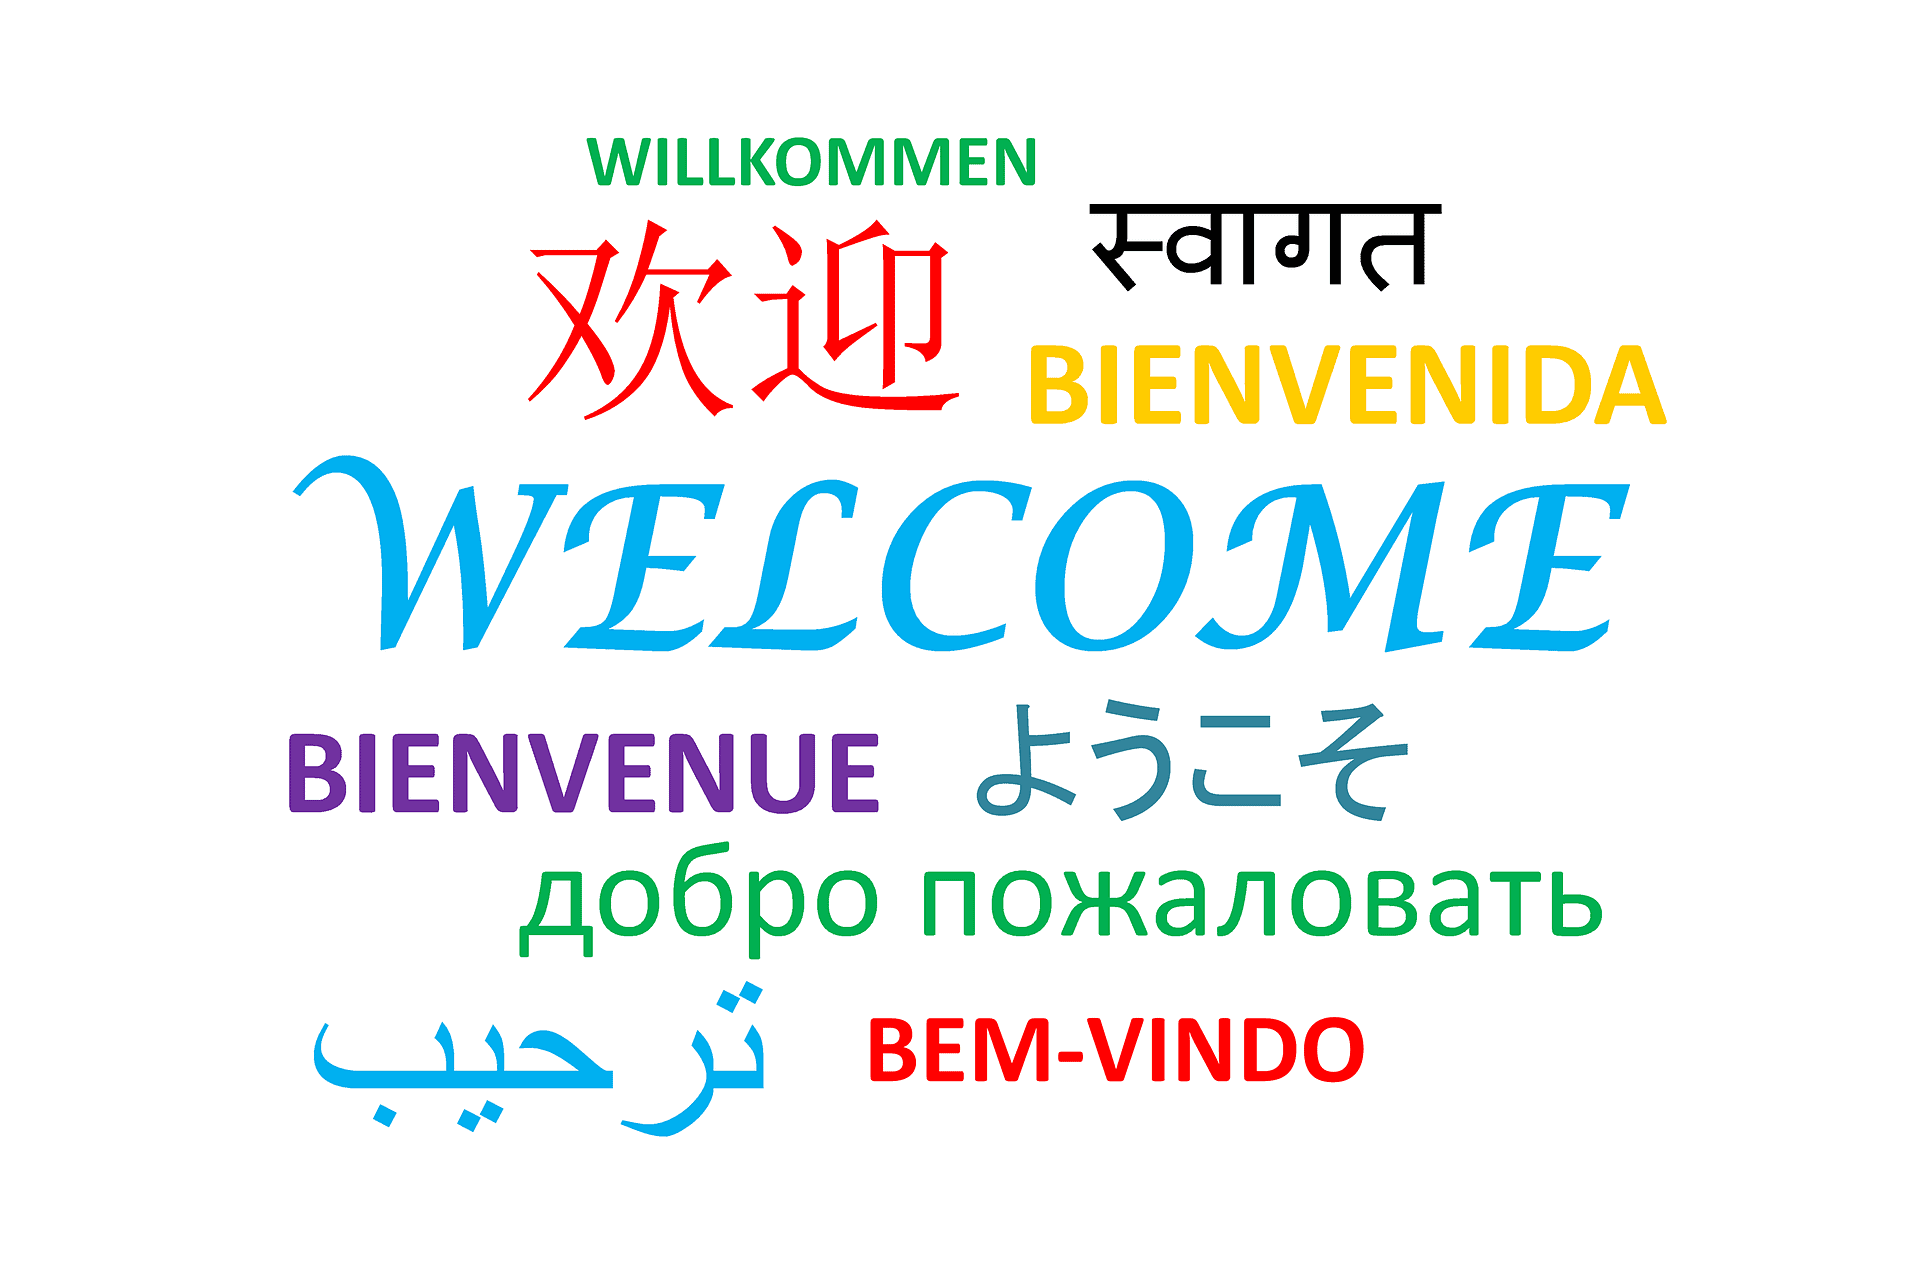 ميزة تعدد اللغات هى ترجمة تلقائية إلى 40 لغة مختلفة